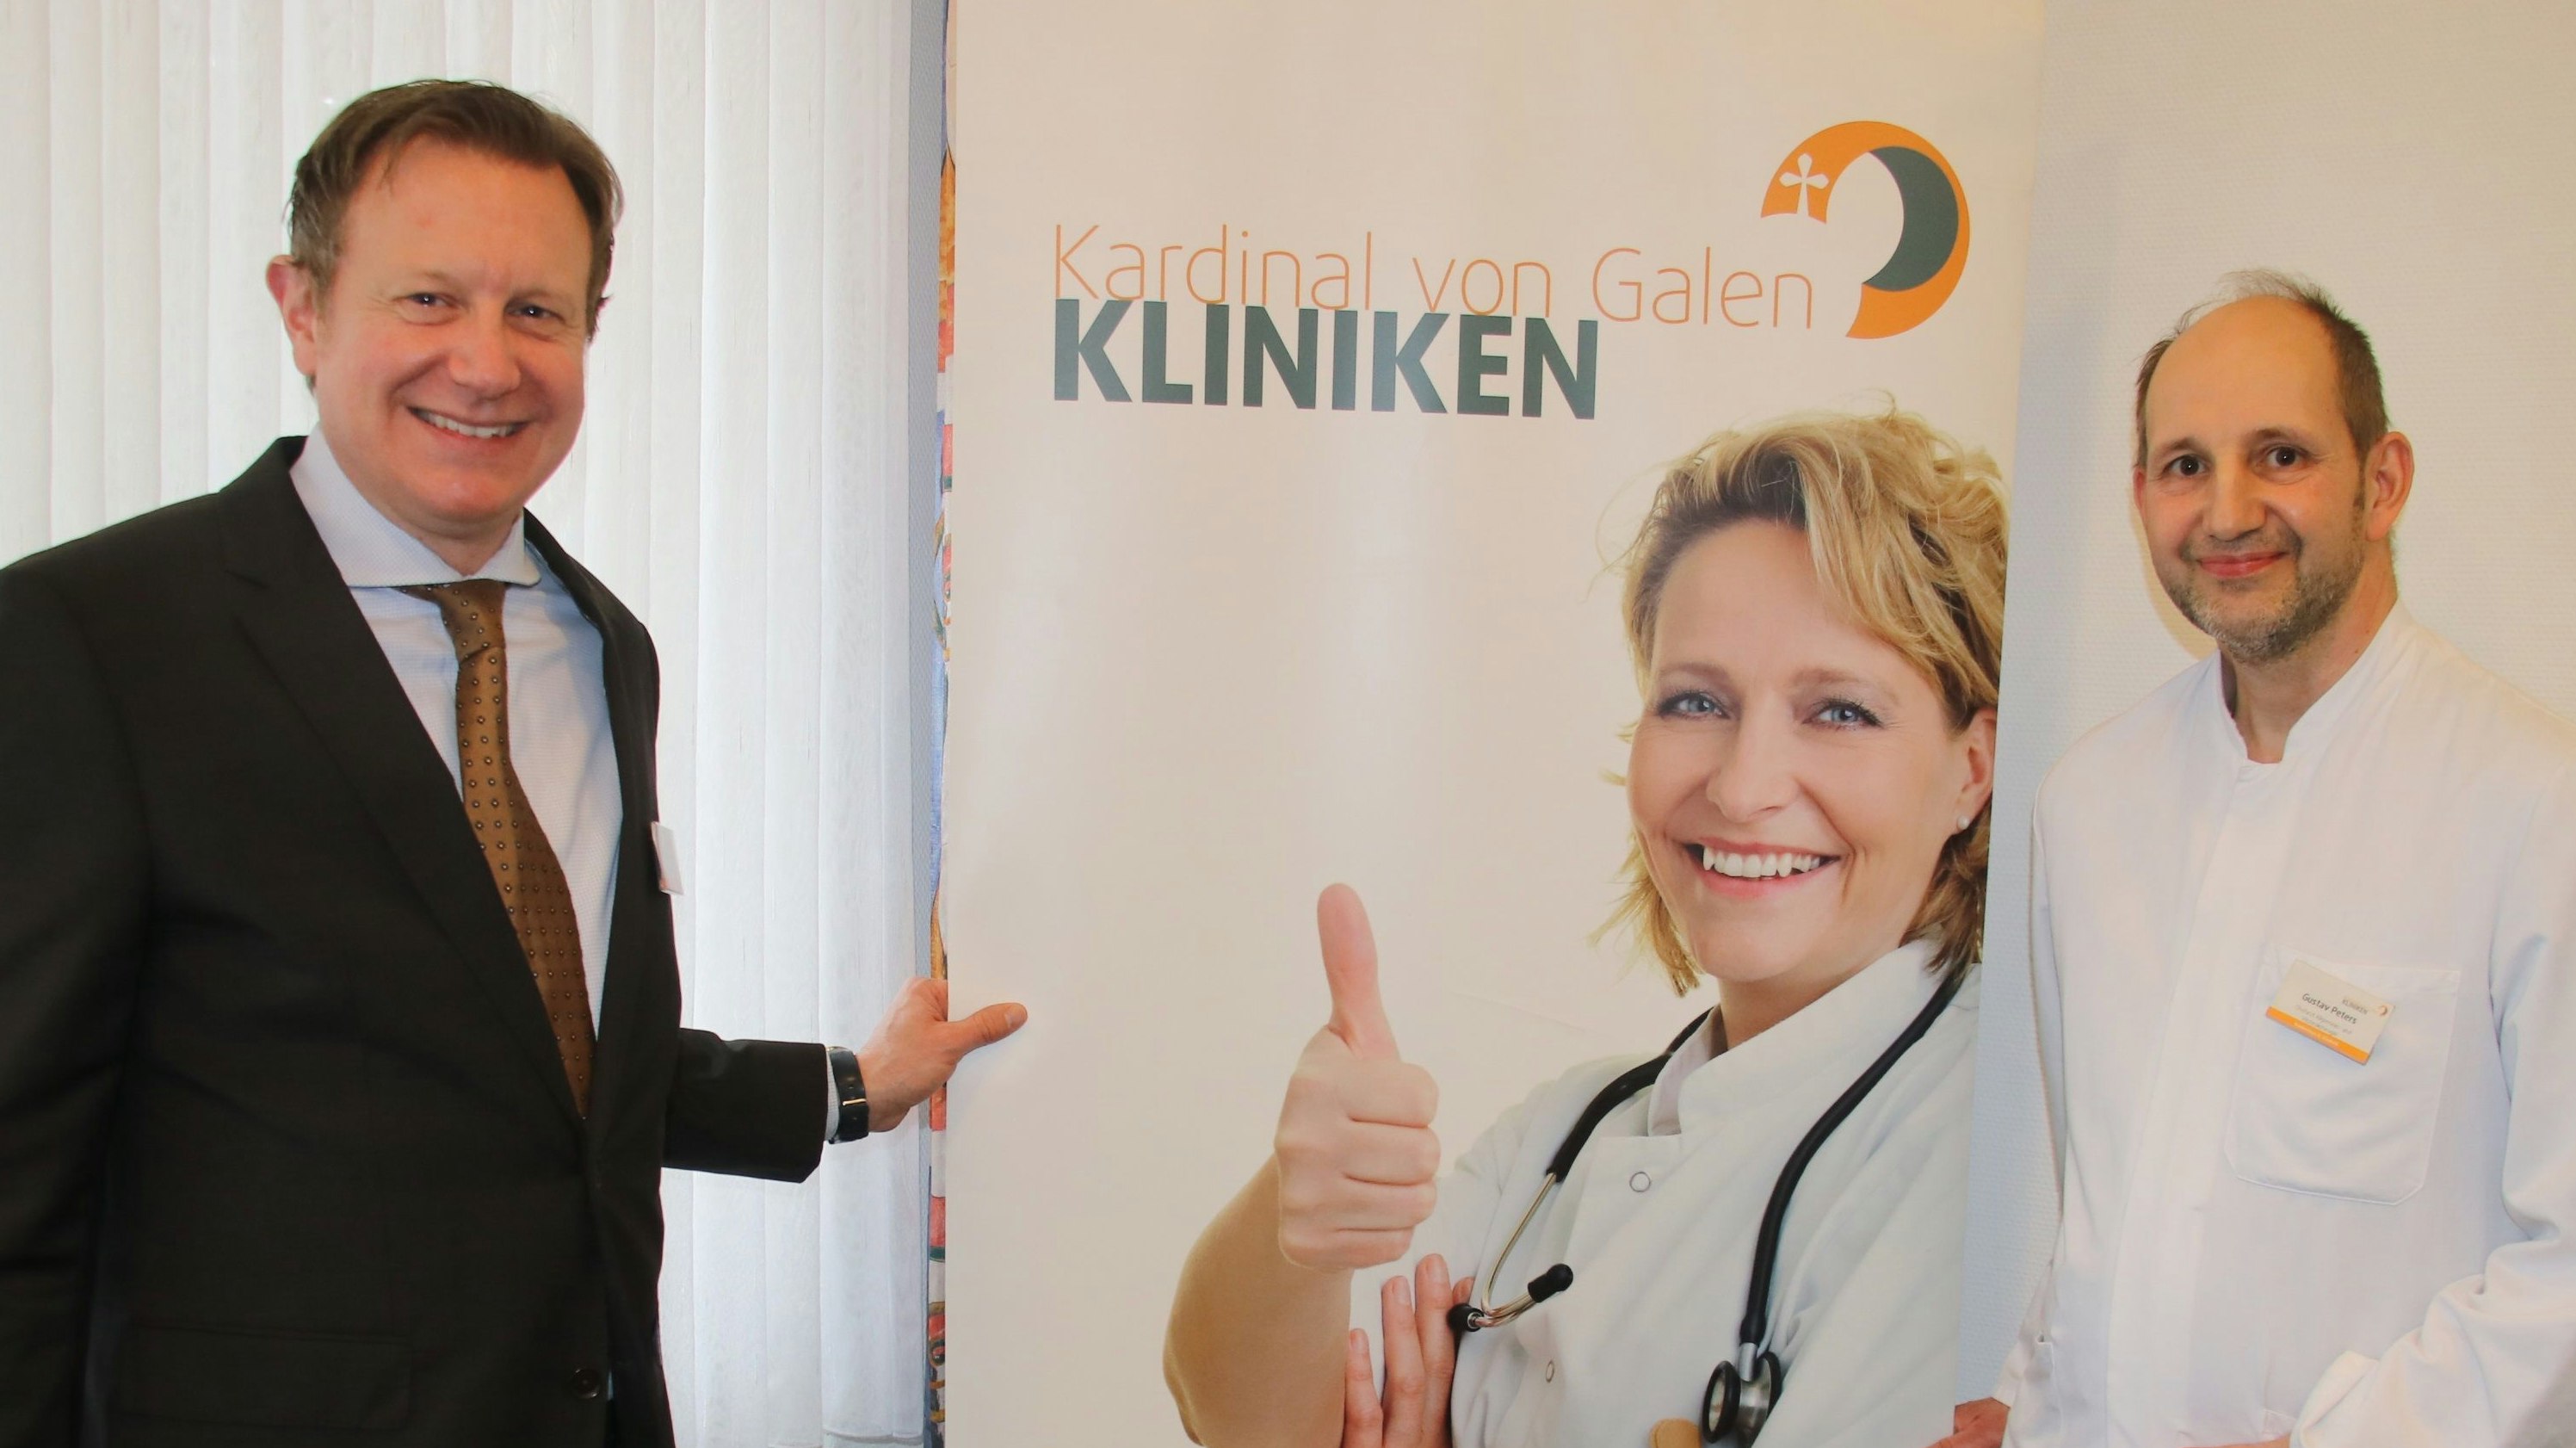 Gemeinsam für die gute Sache: Dr. Niklas Cruse (links) und Gustav Peters wollen das Krankenhaus weiter stärken. Foto: Lammert